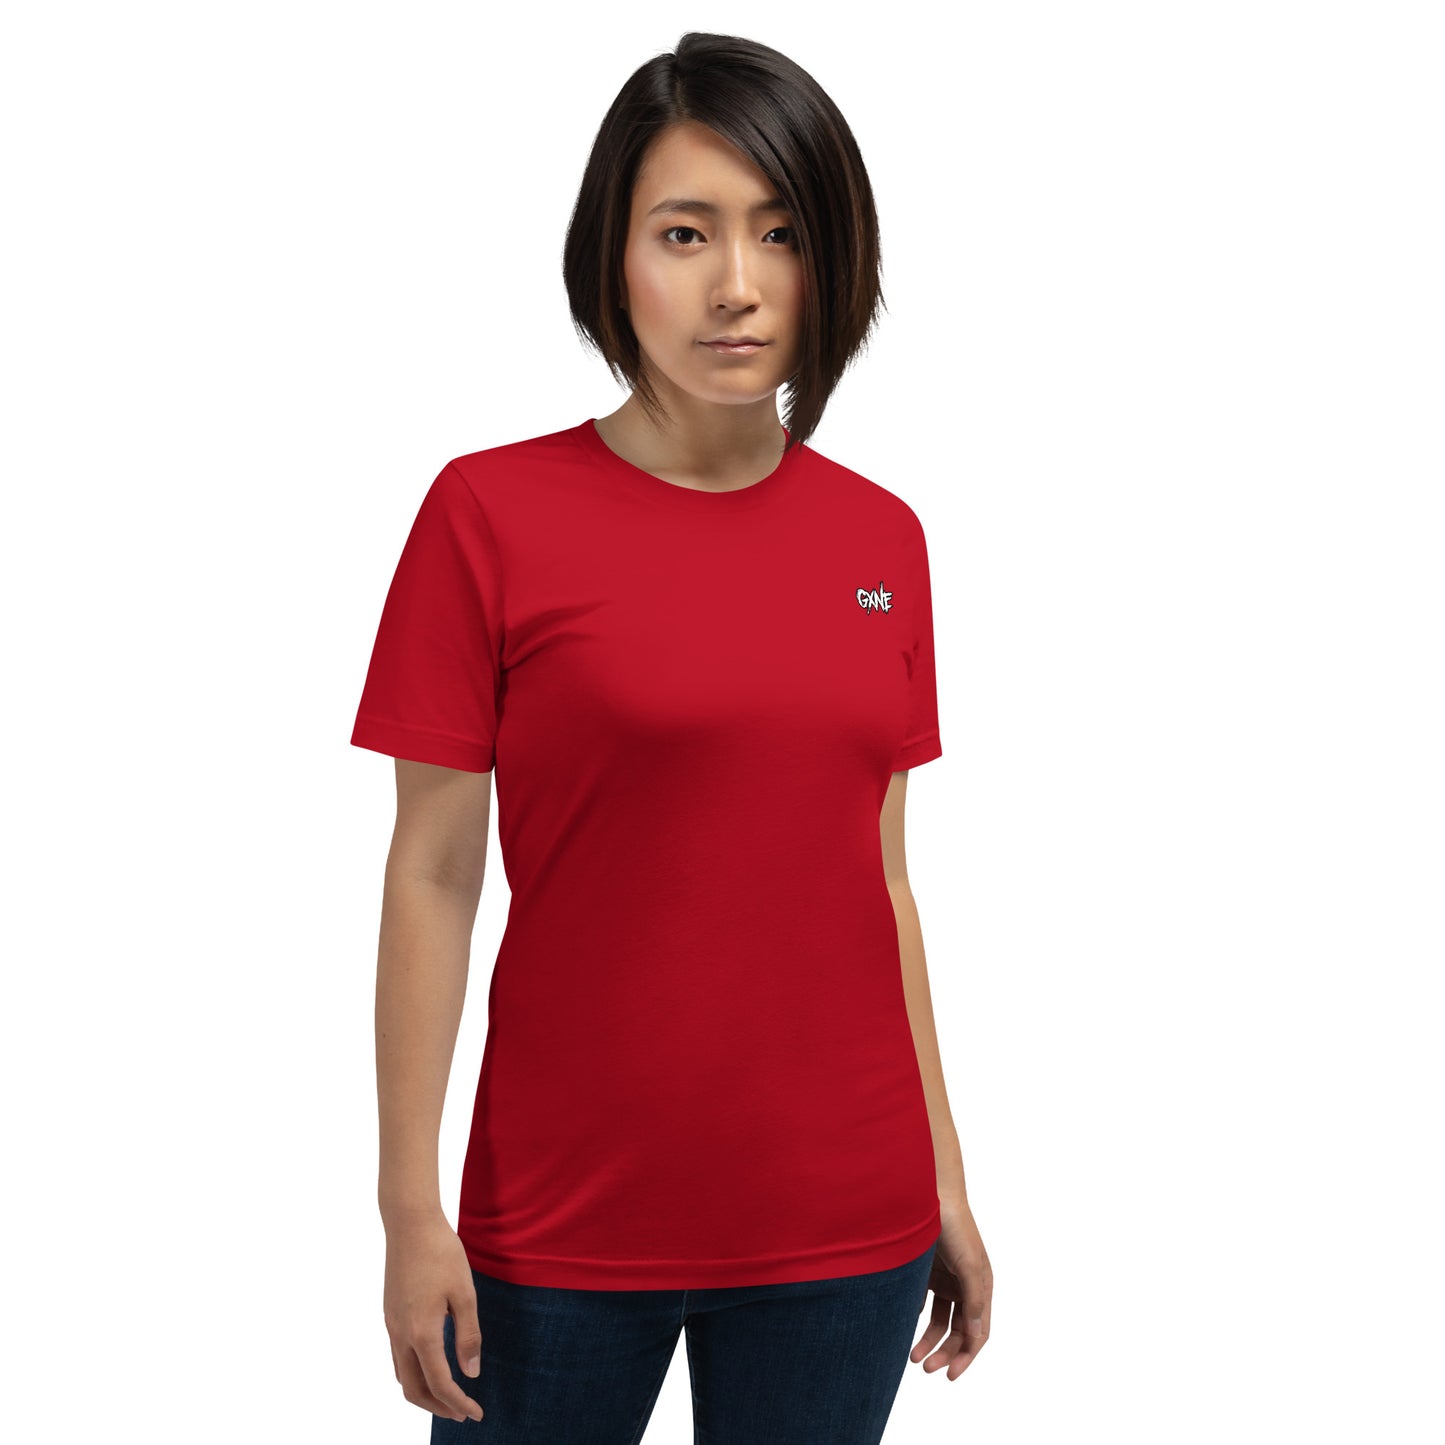 GXNE T-Shirt